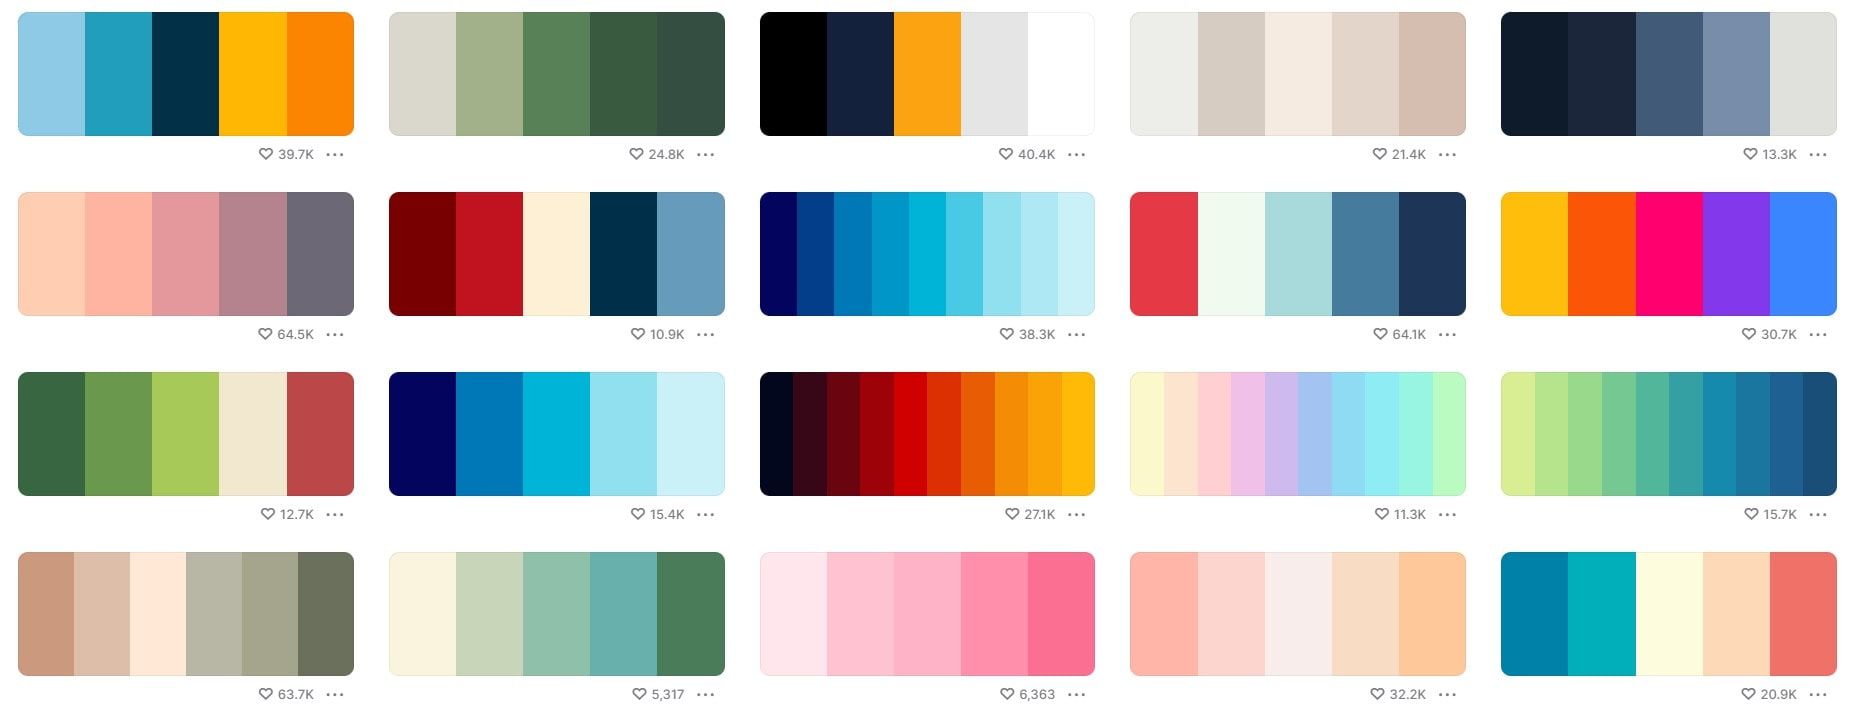 Exemplo de paletas de cores para criar um vídeo @definicao.marketing